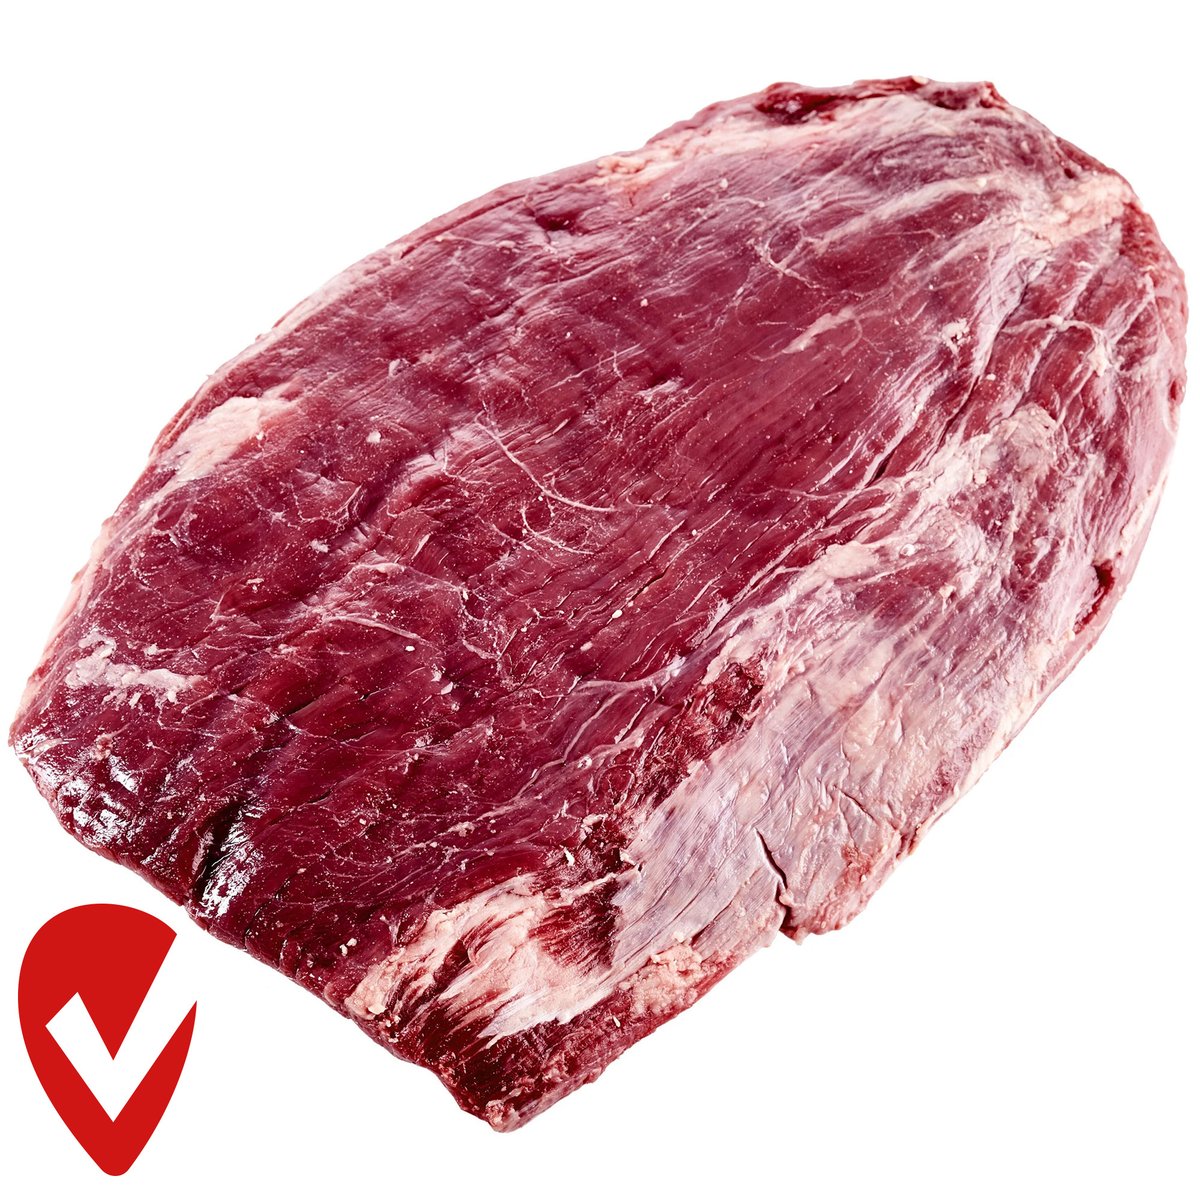 Sutcha Flank steak ze Severní Ameriky mramorovaný